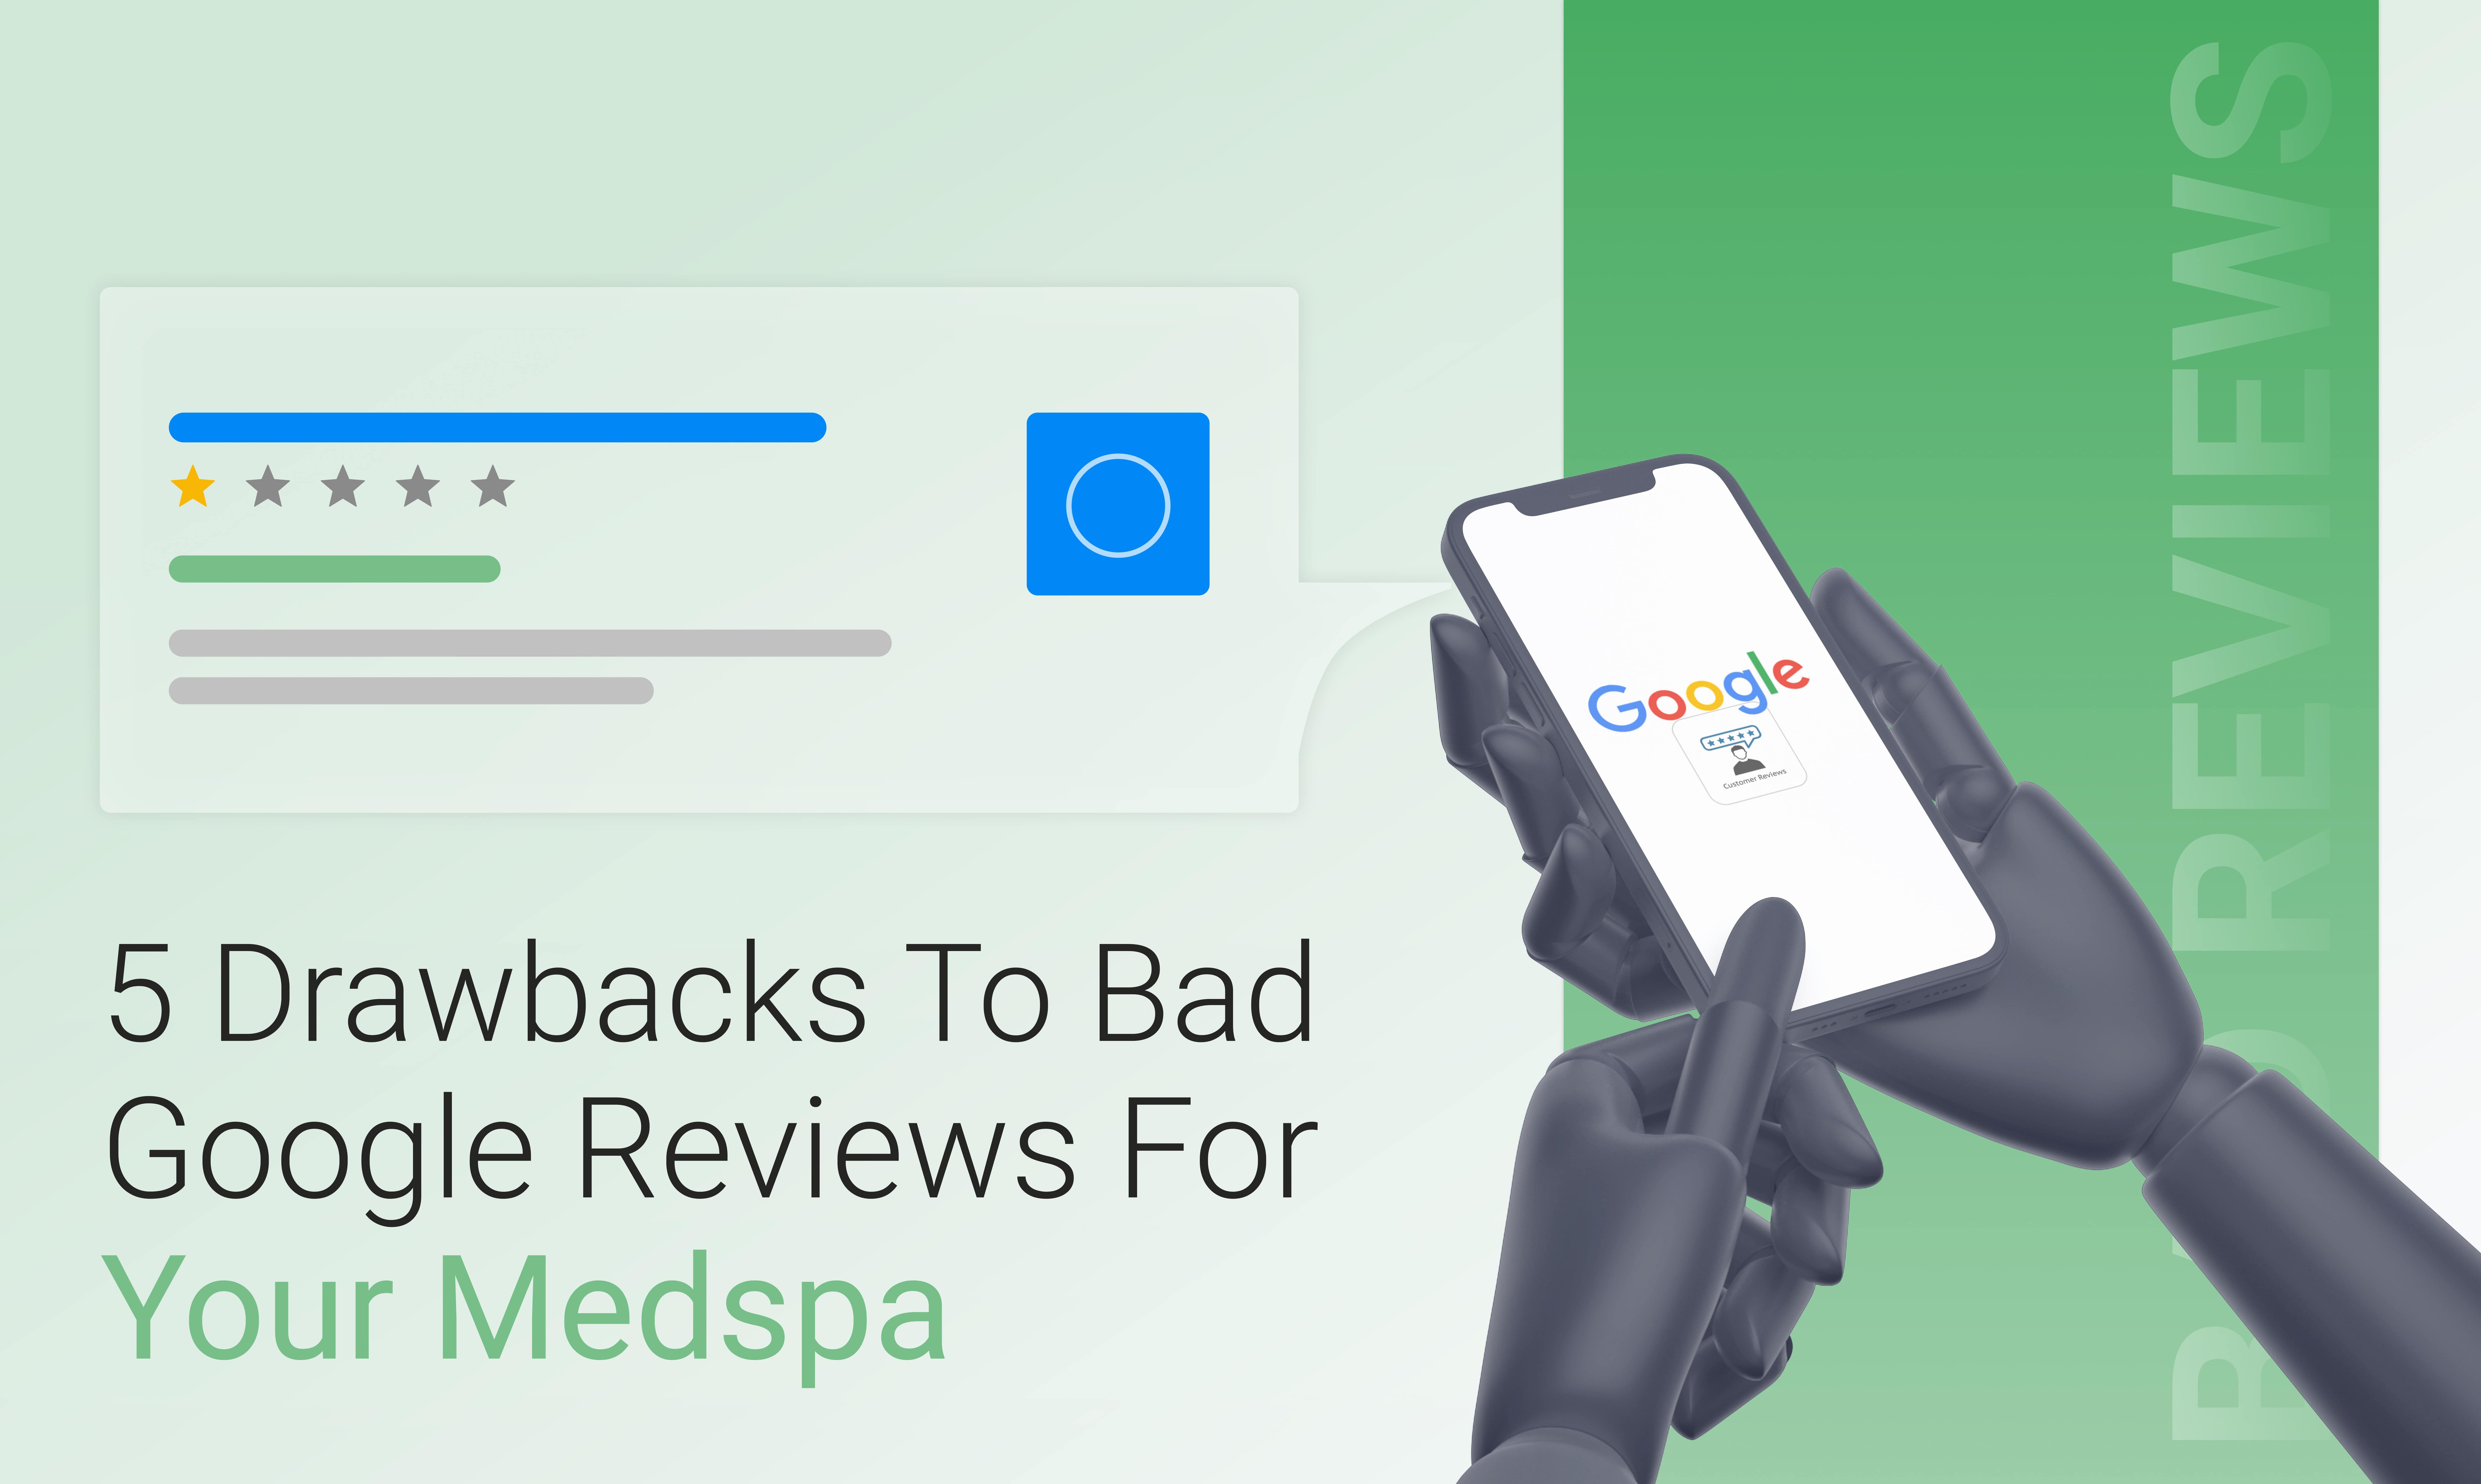 Bad Google Reviews For Your Medspa